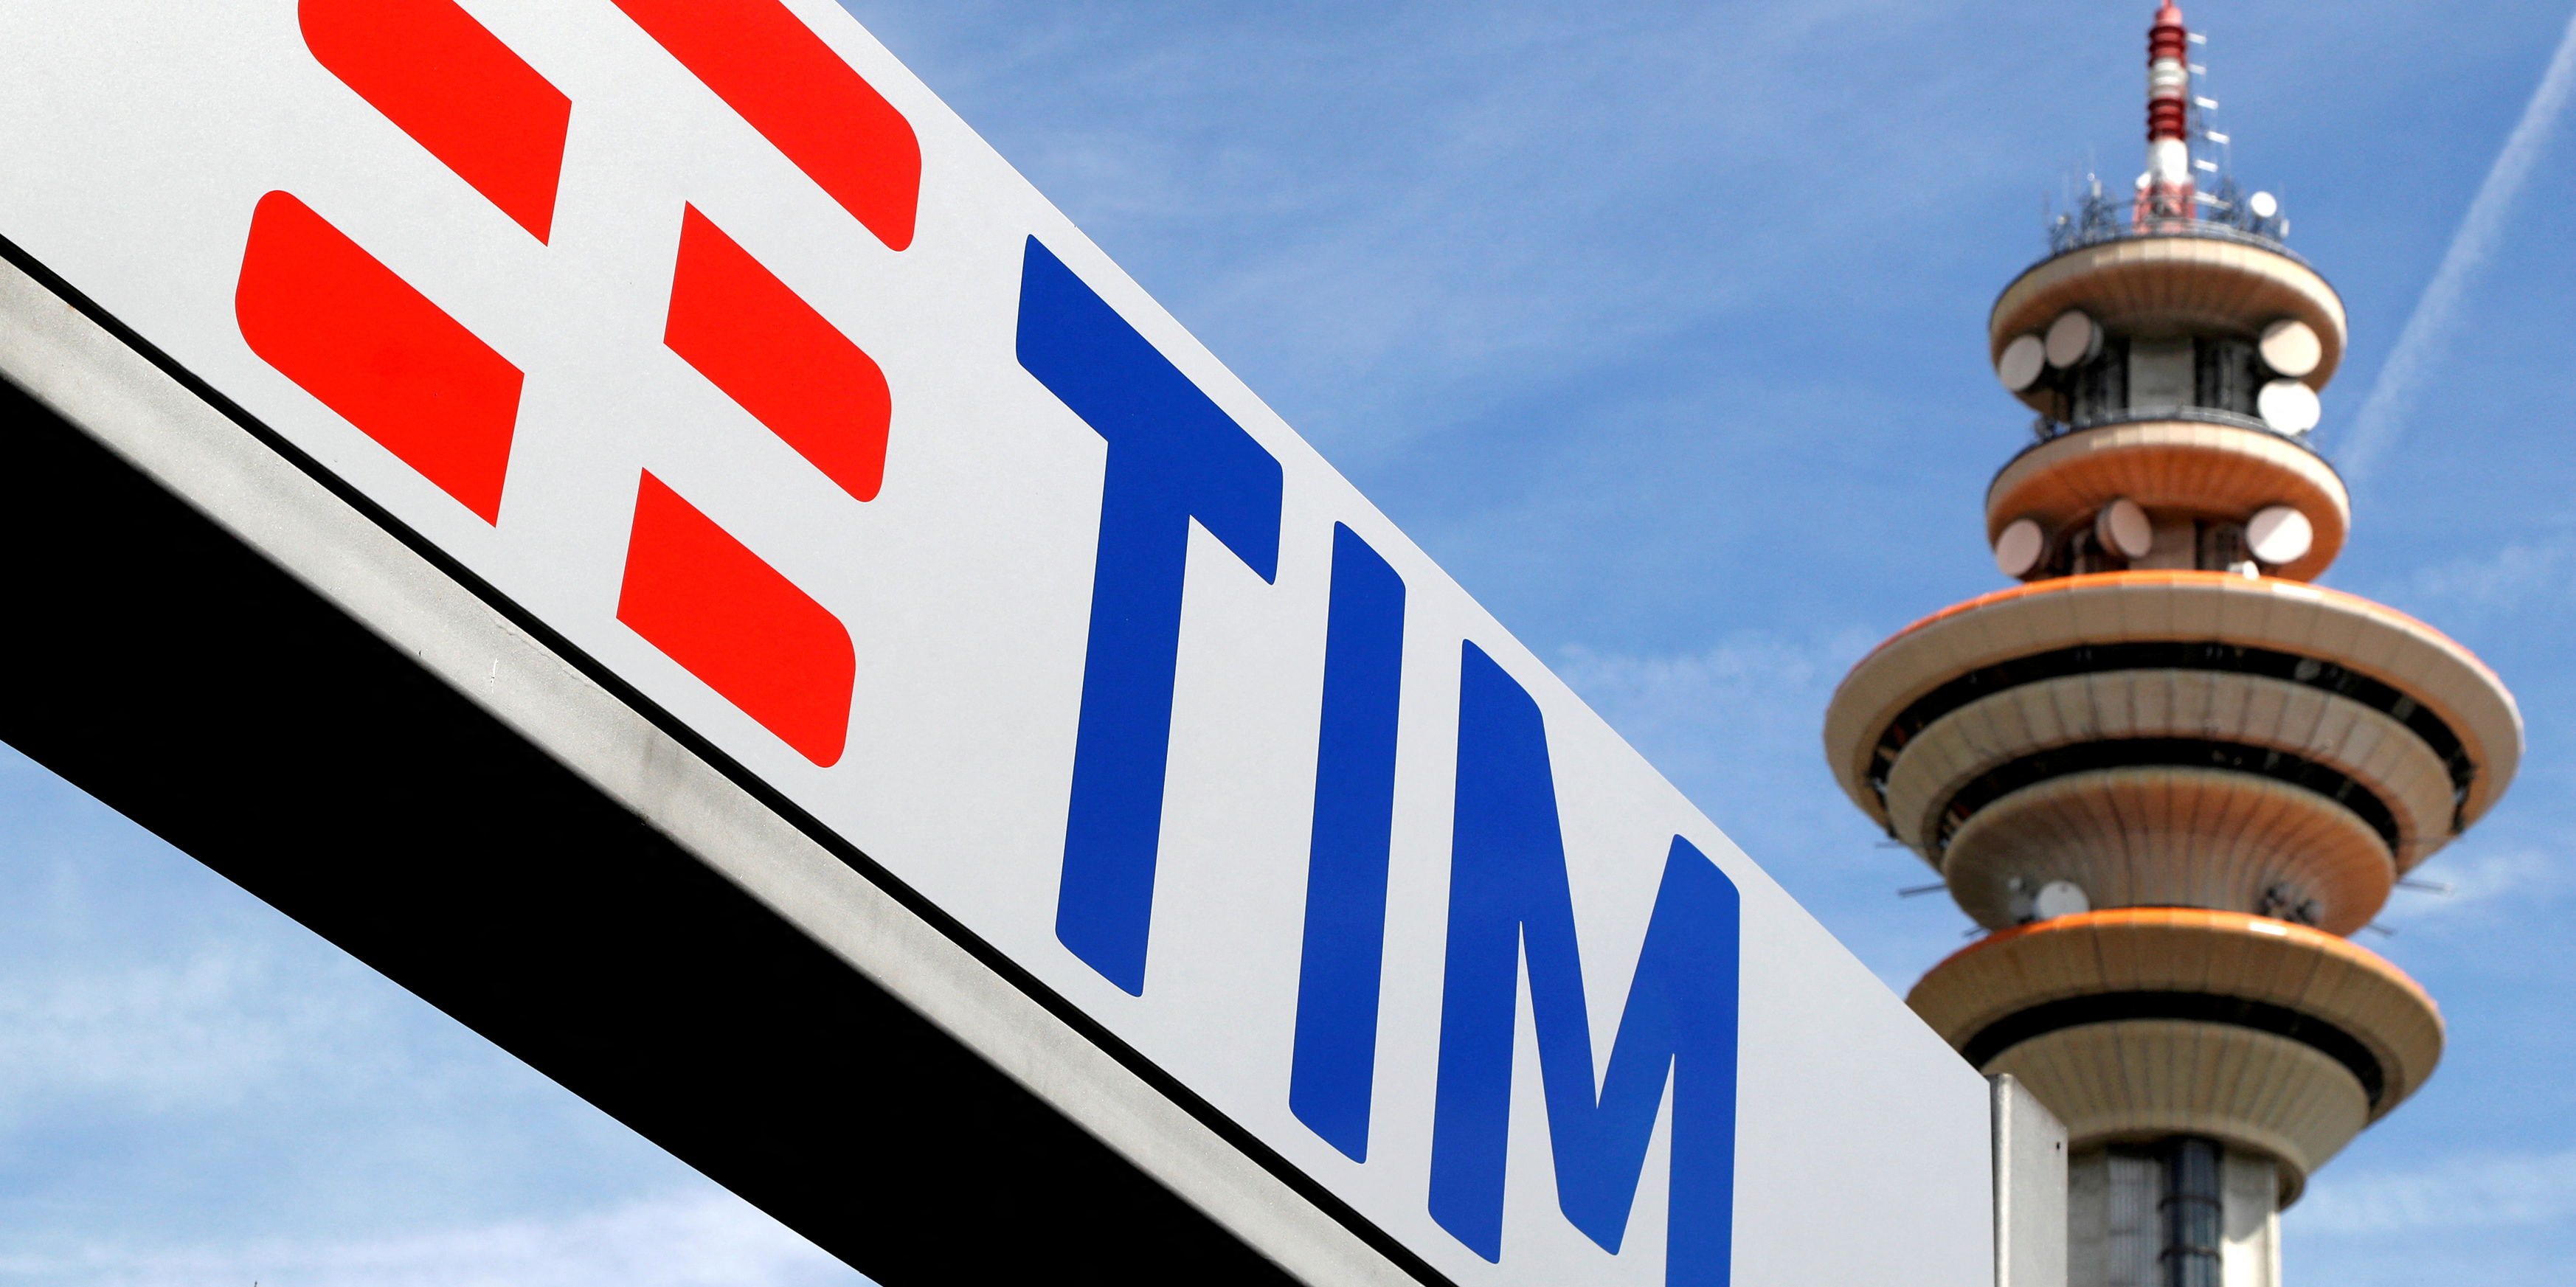 Plombé par des pertes colossales, Telecom Italia prépare sa scission